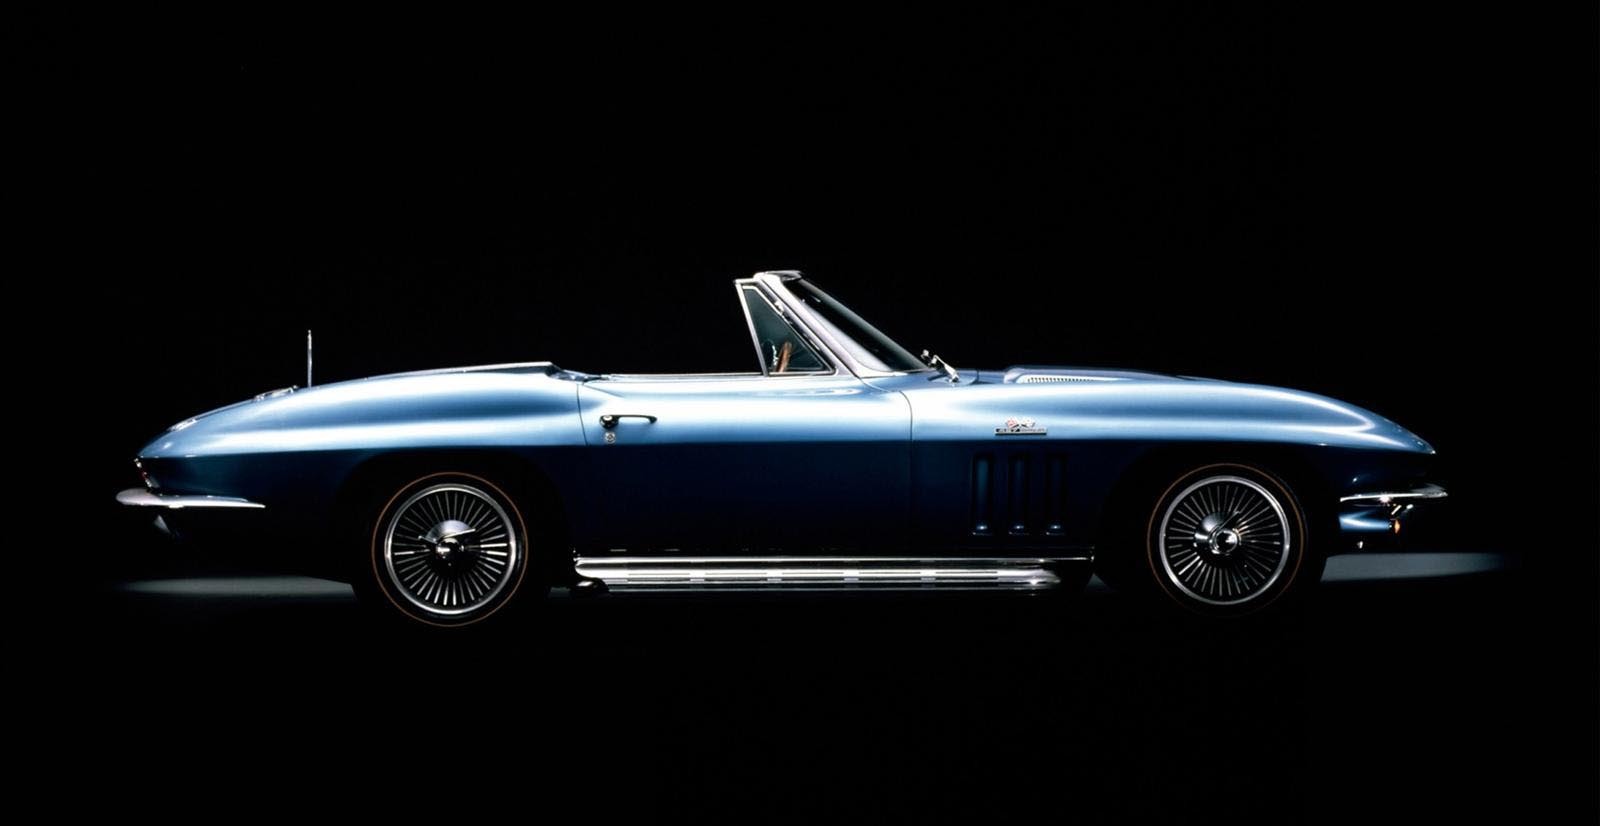 In 1965, Corvette C3 primeste un motor V8 de 427 cubic inch si 425 CP